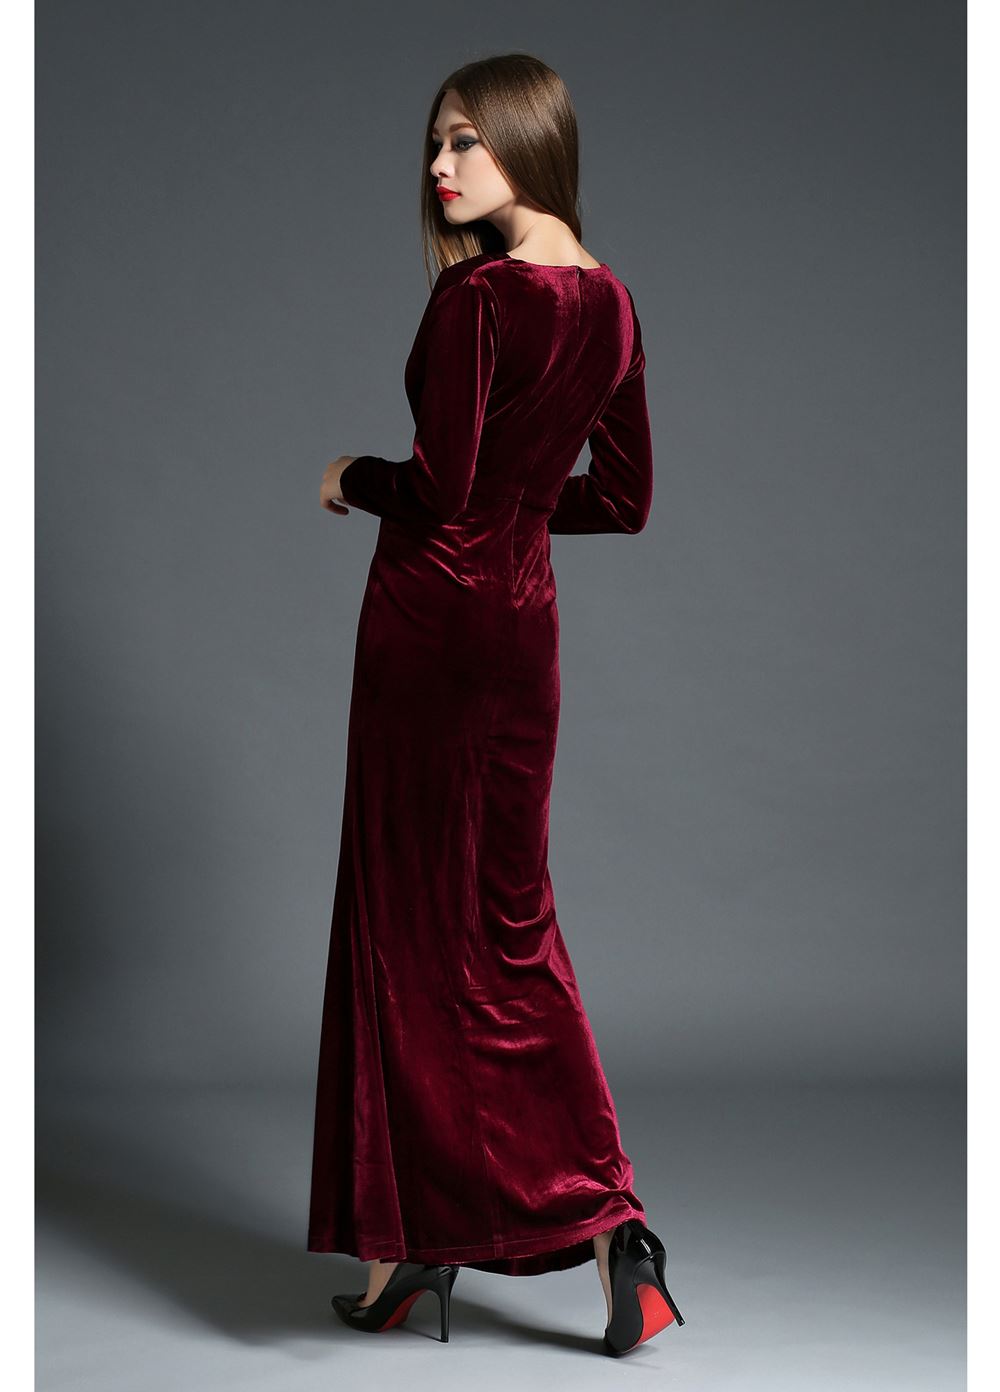 Длинное бархатное платье. Красное вельветовое платье женское. Красное бархатное платье. Красное бархатное вечернее платье.